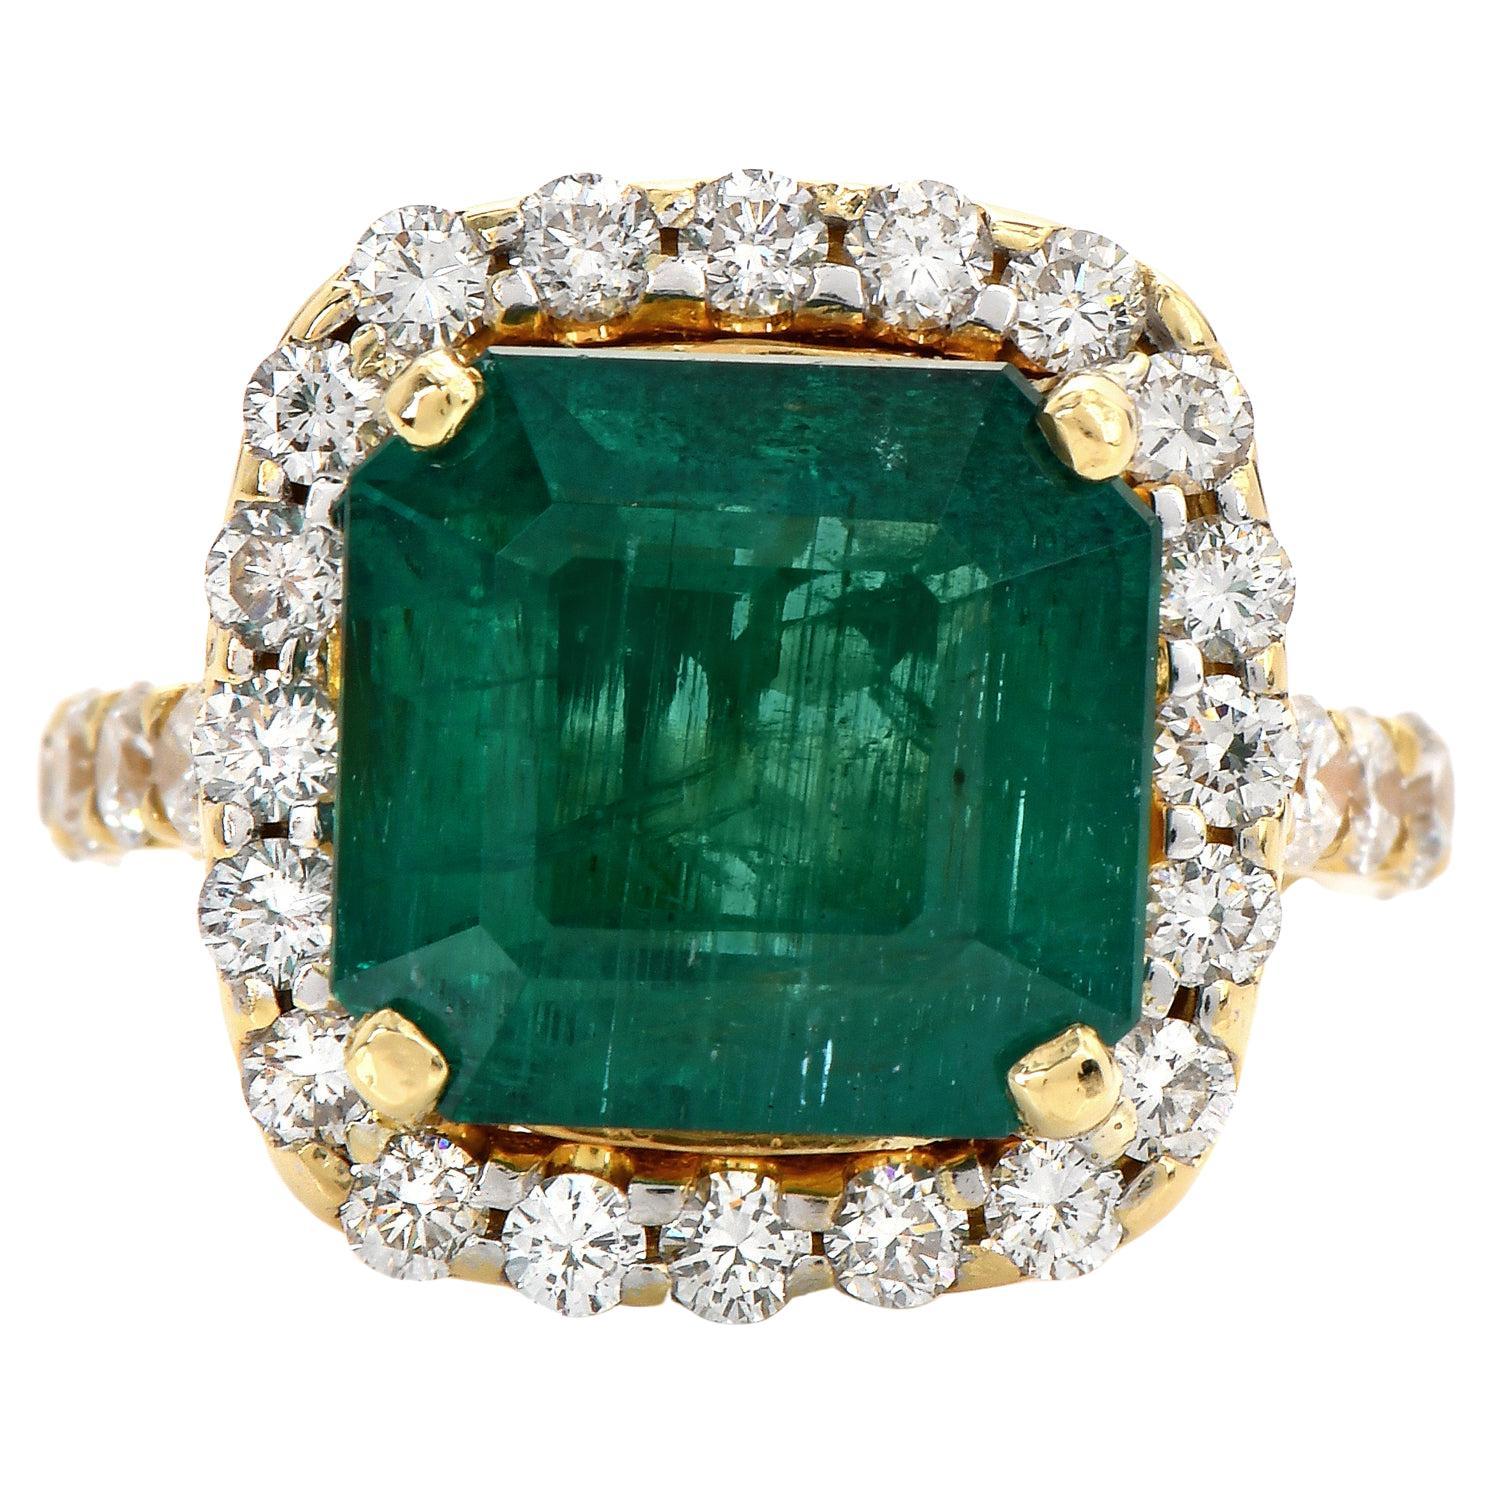 Imaginez l'élégance pure et la beauté intemporelle qui vous attendent avec la bague Large Emerald et diamant.
L'envoûtante teinte verte de l'émeraude véritable centrale, taille émeraude carrée, pesant 8,08 carats, combinée à l'éclat des 43 diamants